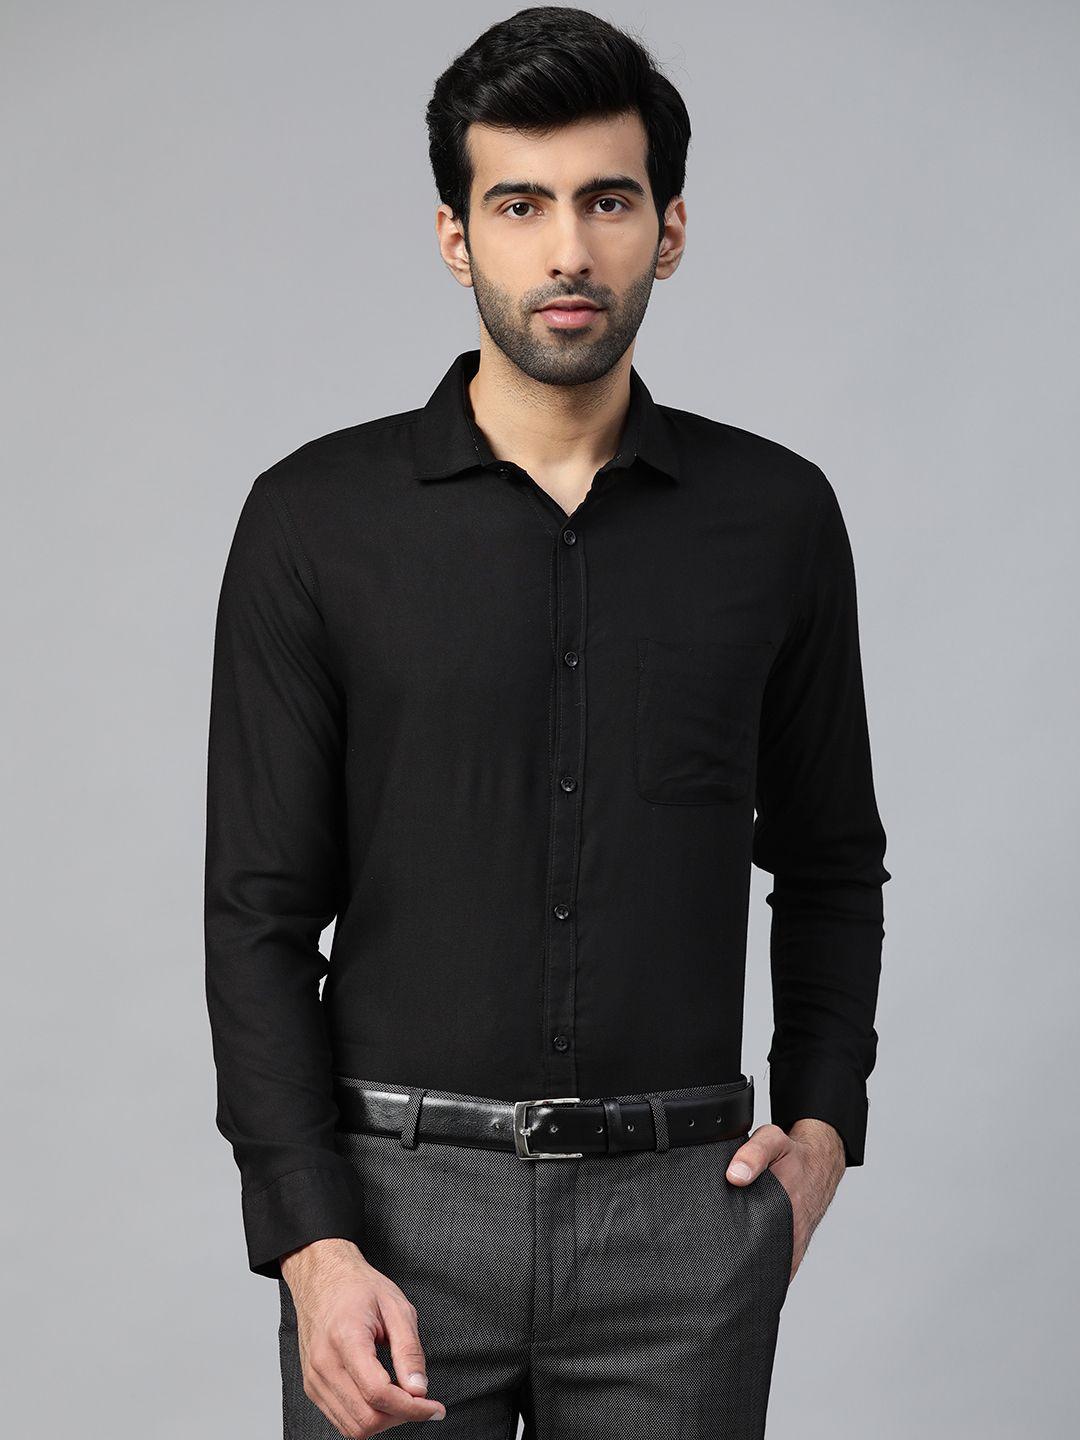 dennison men black smart slim fit solid formal wrinkle free shirt